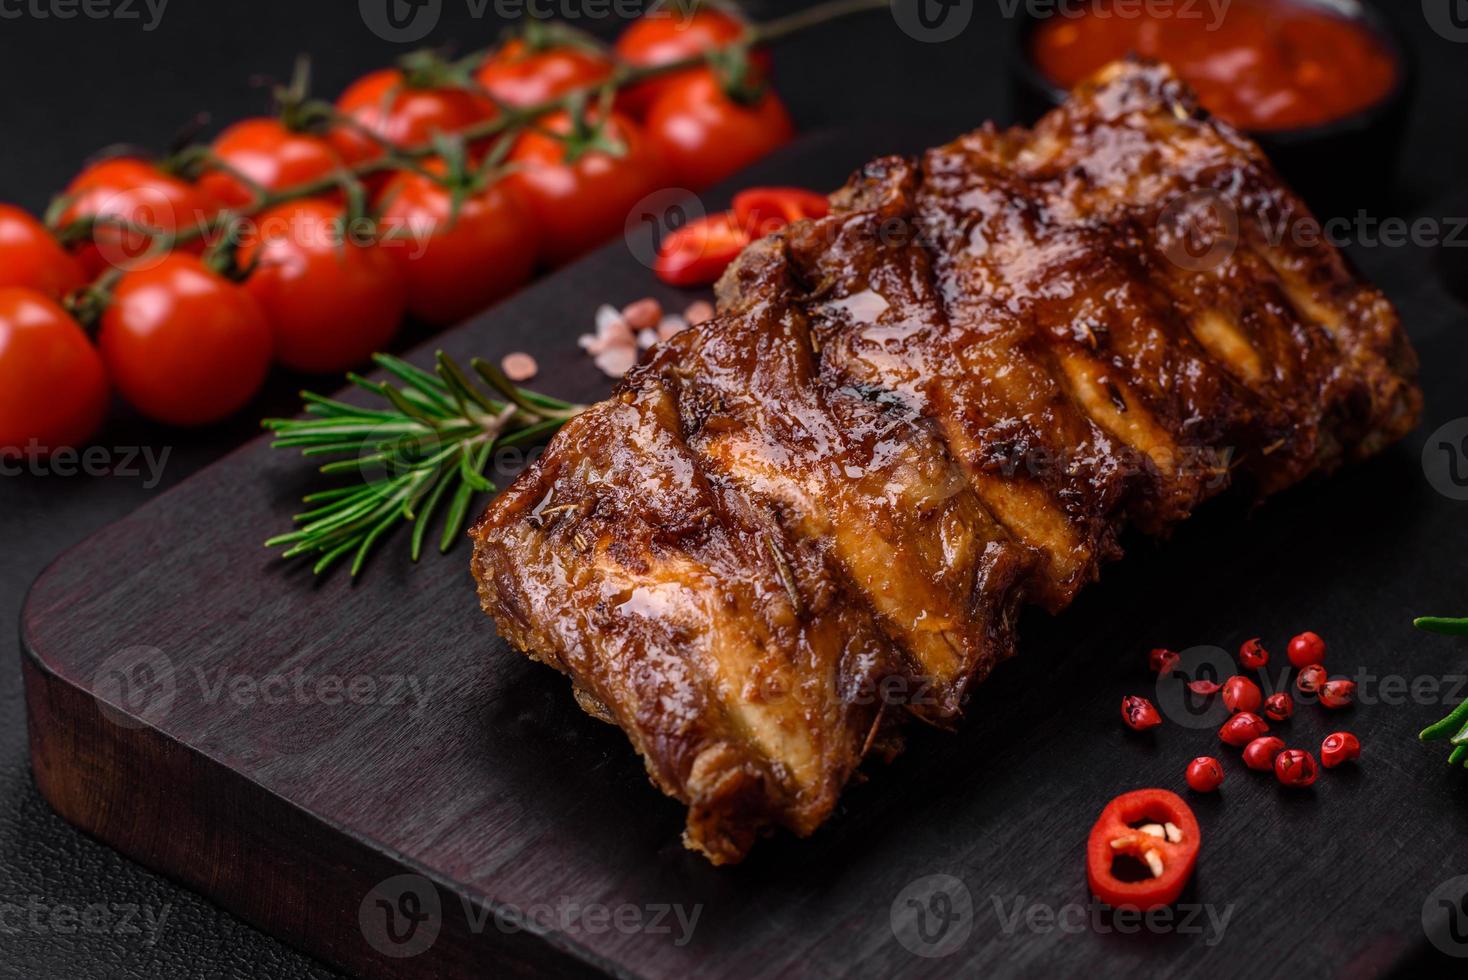 heerlijk gegrild varkensvlees ribben met saus, specerijen en kruiden foto